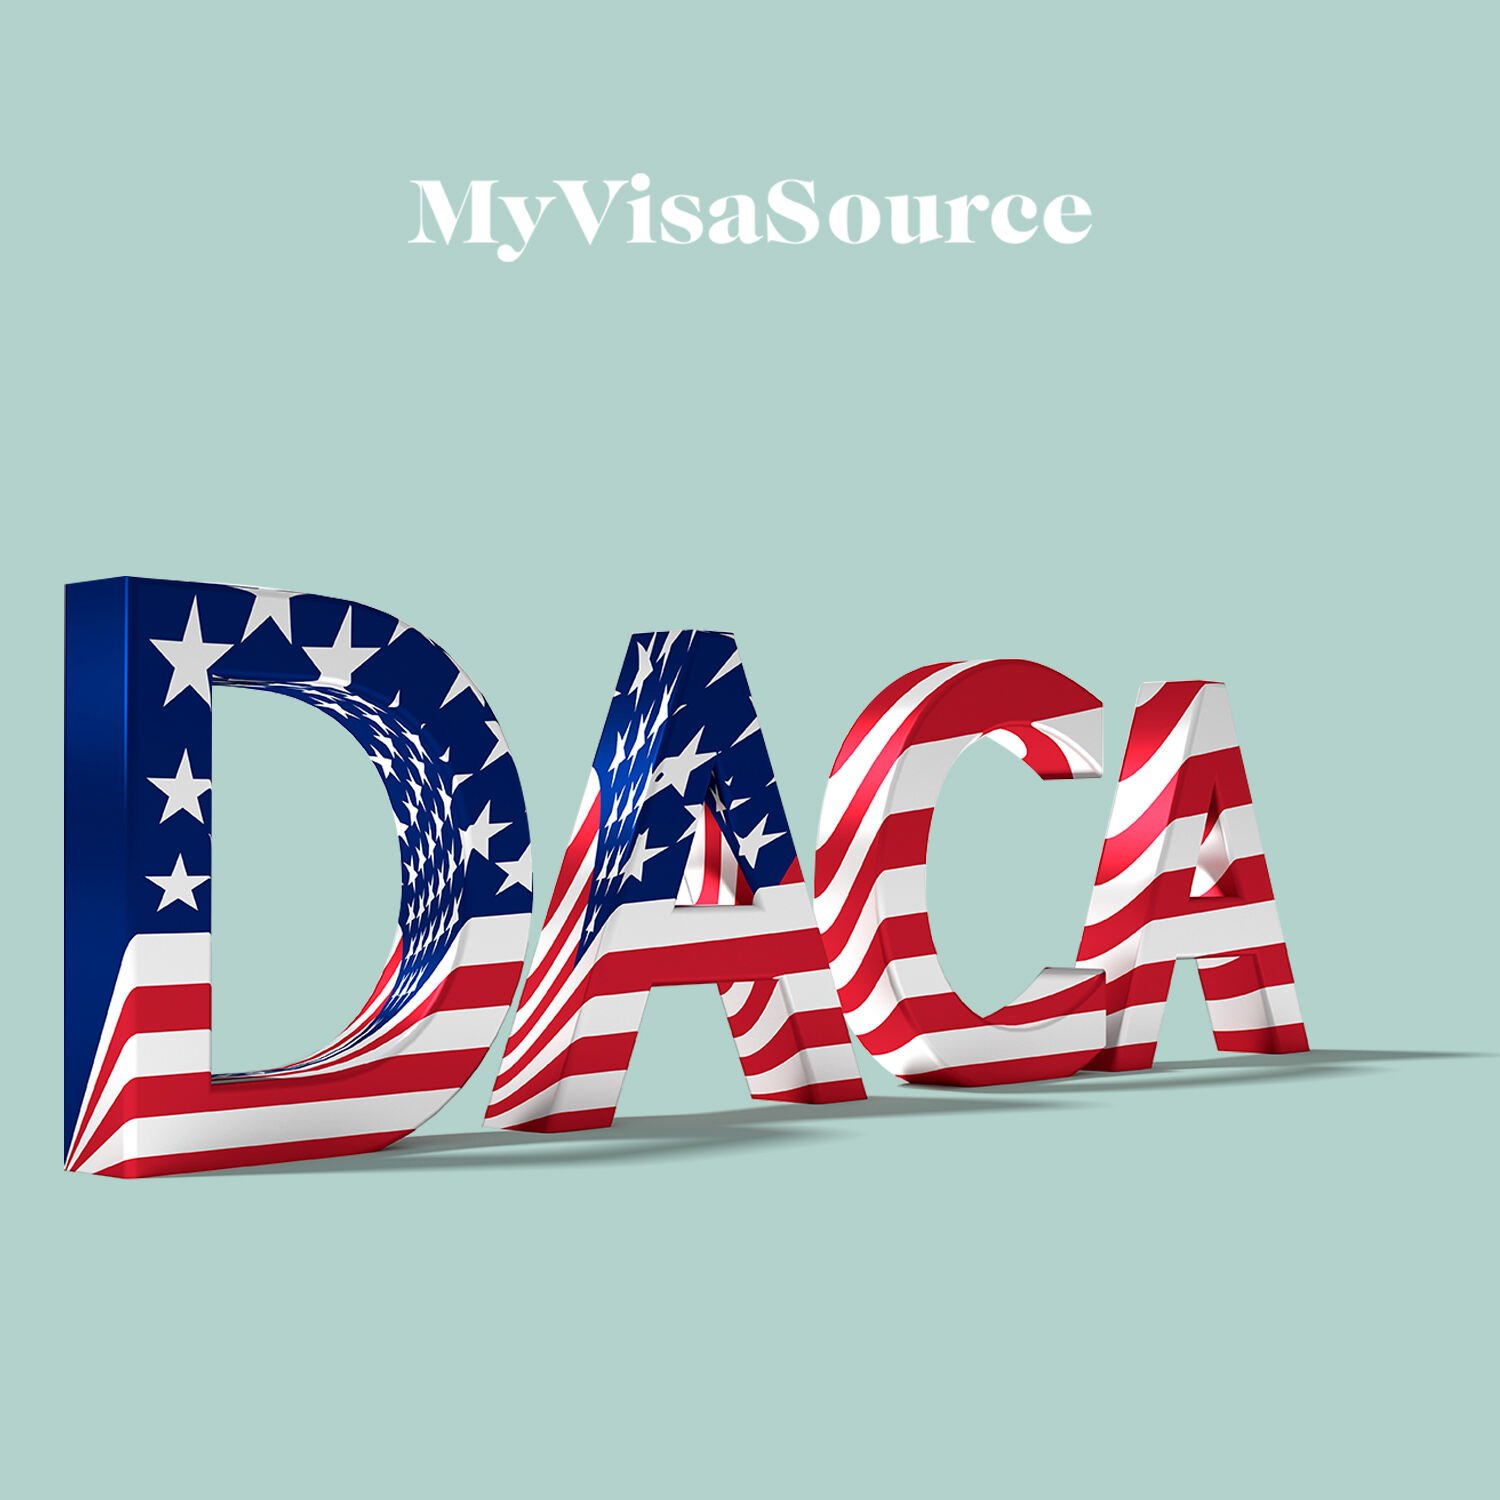 3d letters spelling daca my visa source